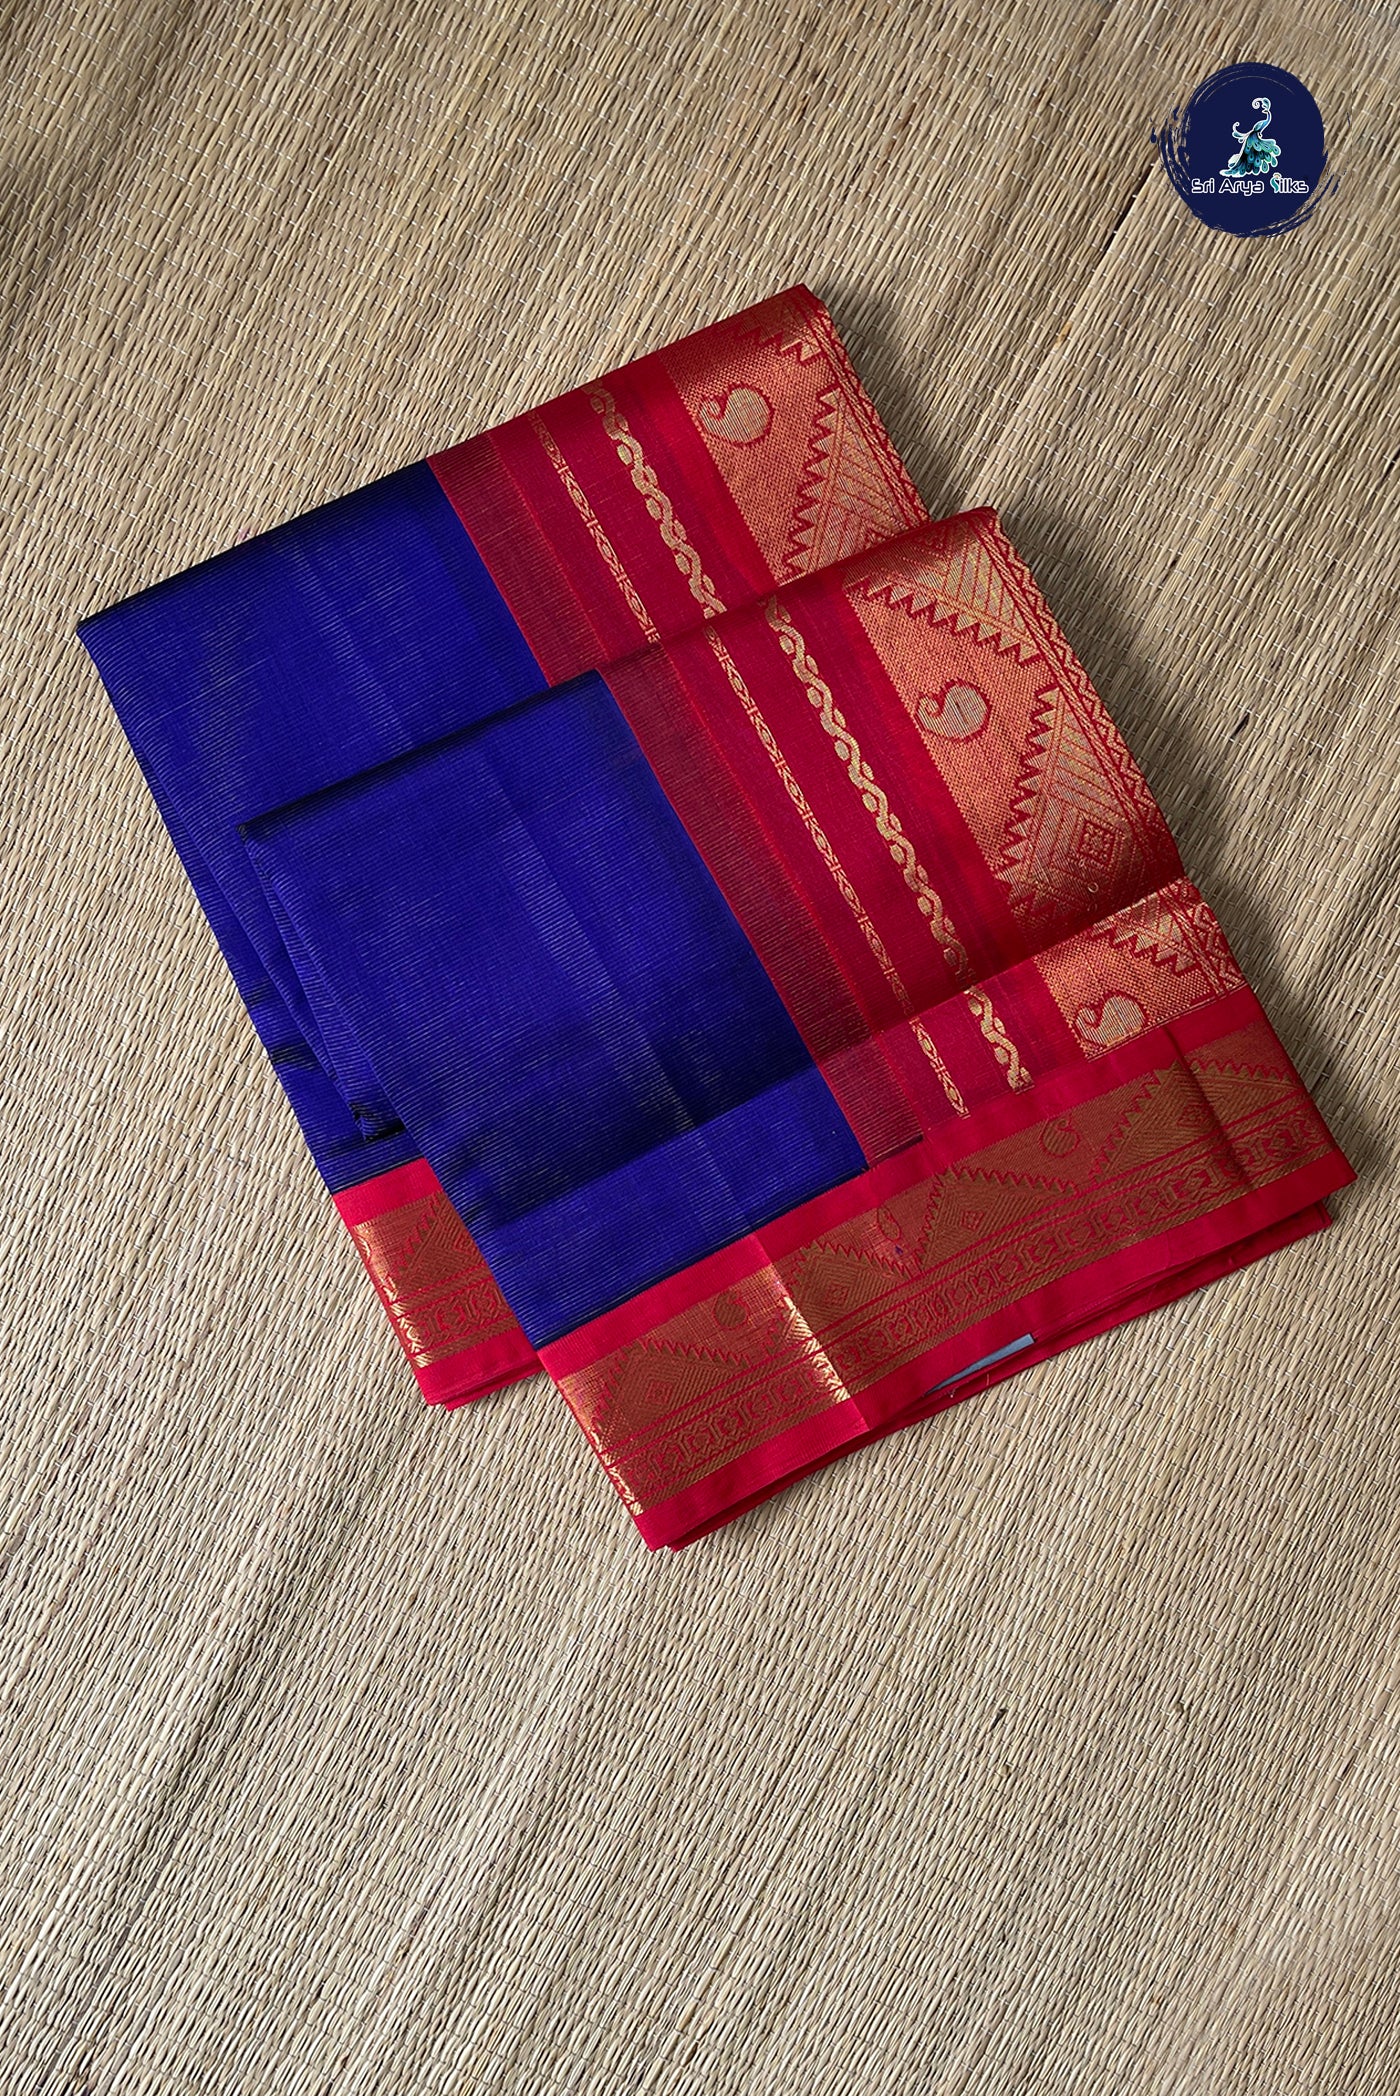 MS Blue Vaira Oosi Silk Cotton Saree With Vaira Oosi Pattern